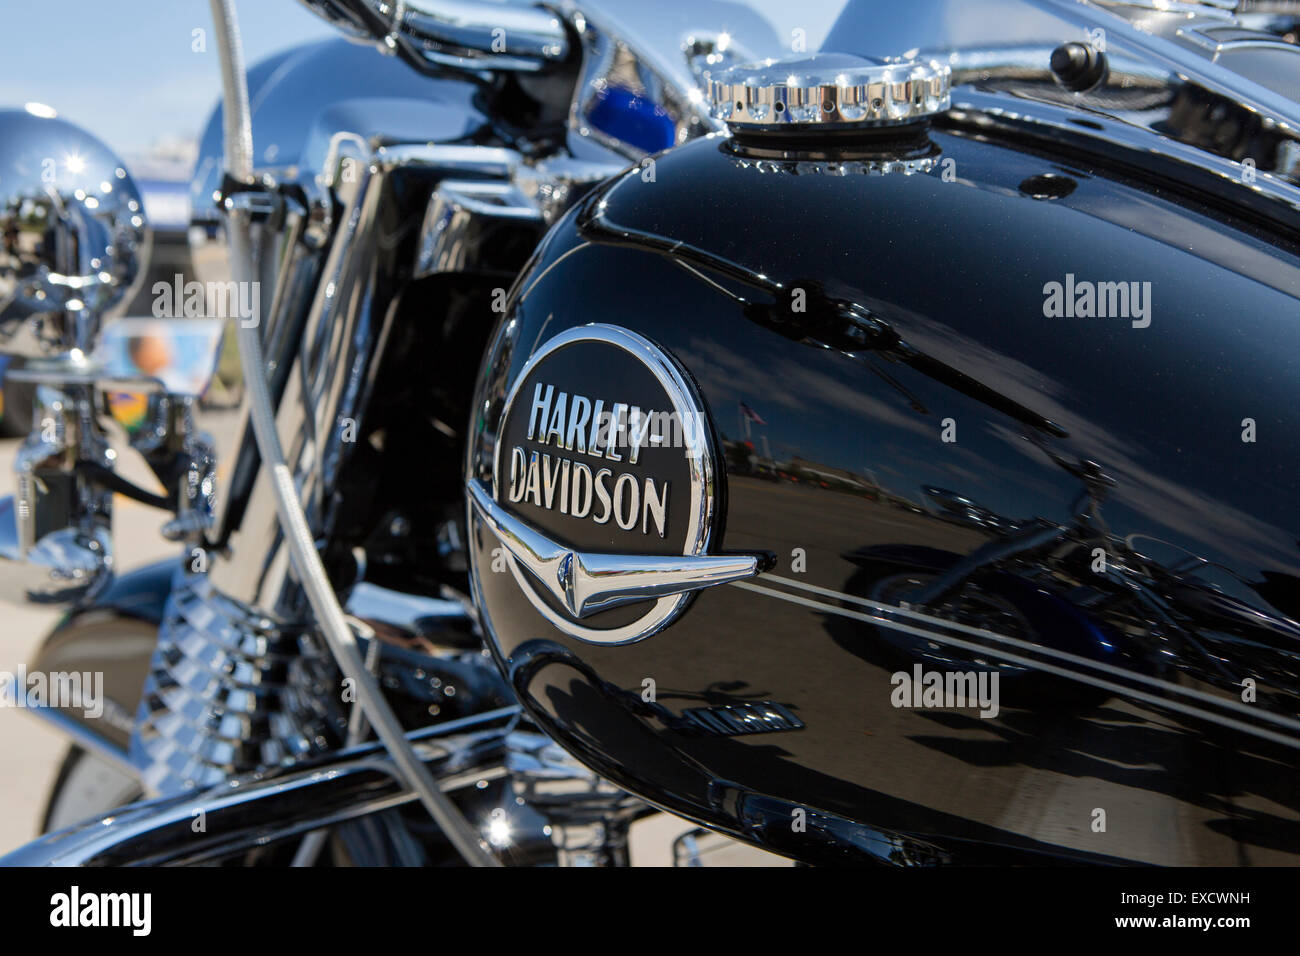 Nahaufnahme von einem Motorrad Tankdeckel mit dem Harley Davidson Logo auf  einer Versammlung der amerikanischen Motorräder in Beaucaire  Stockfotografie - Alamy